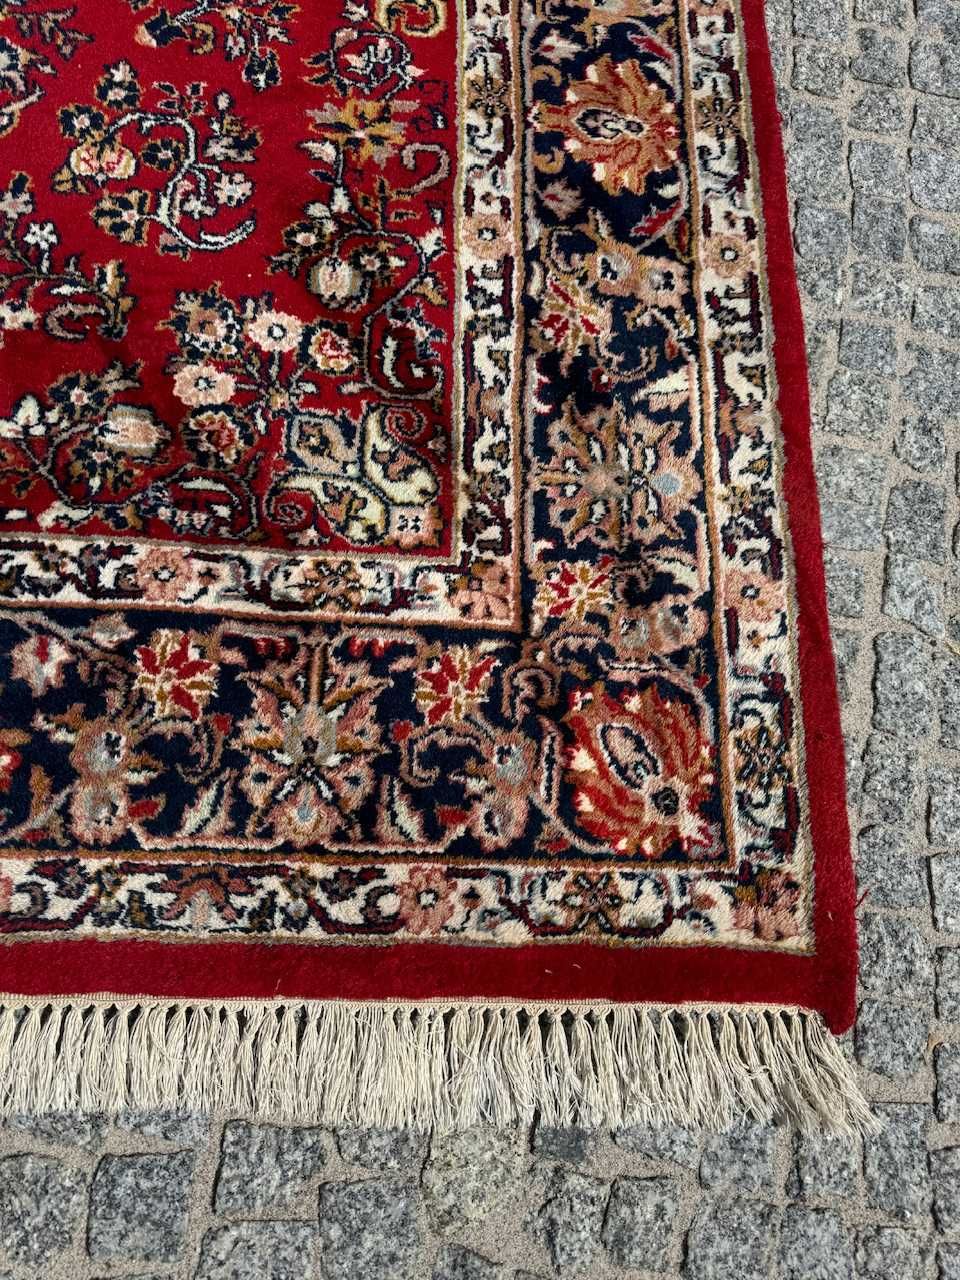 Kaszmirowy dywan perski r. tkany Indo - Sarouck 300x200 galeria 12 tyś